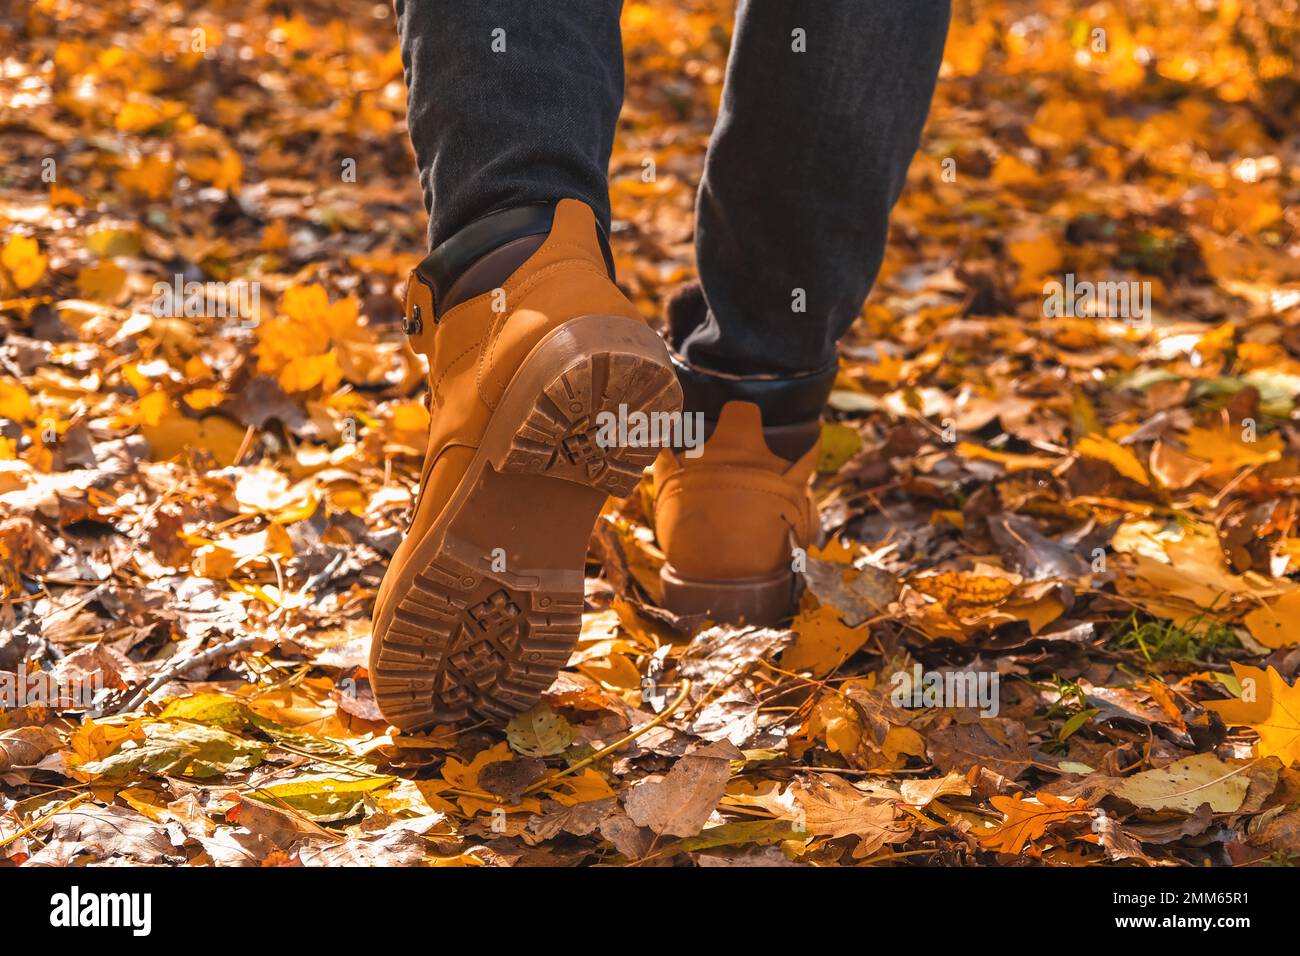 hombre con zapatos rojos camina por el bosque de otoño. Botas anaranjadas sobre hojas amarillas secas caídas. Descanso, relajación en el bosque de otoño. Otoño concepto de caminar el bosque.